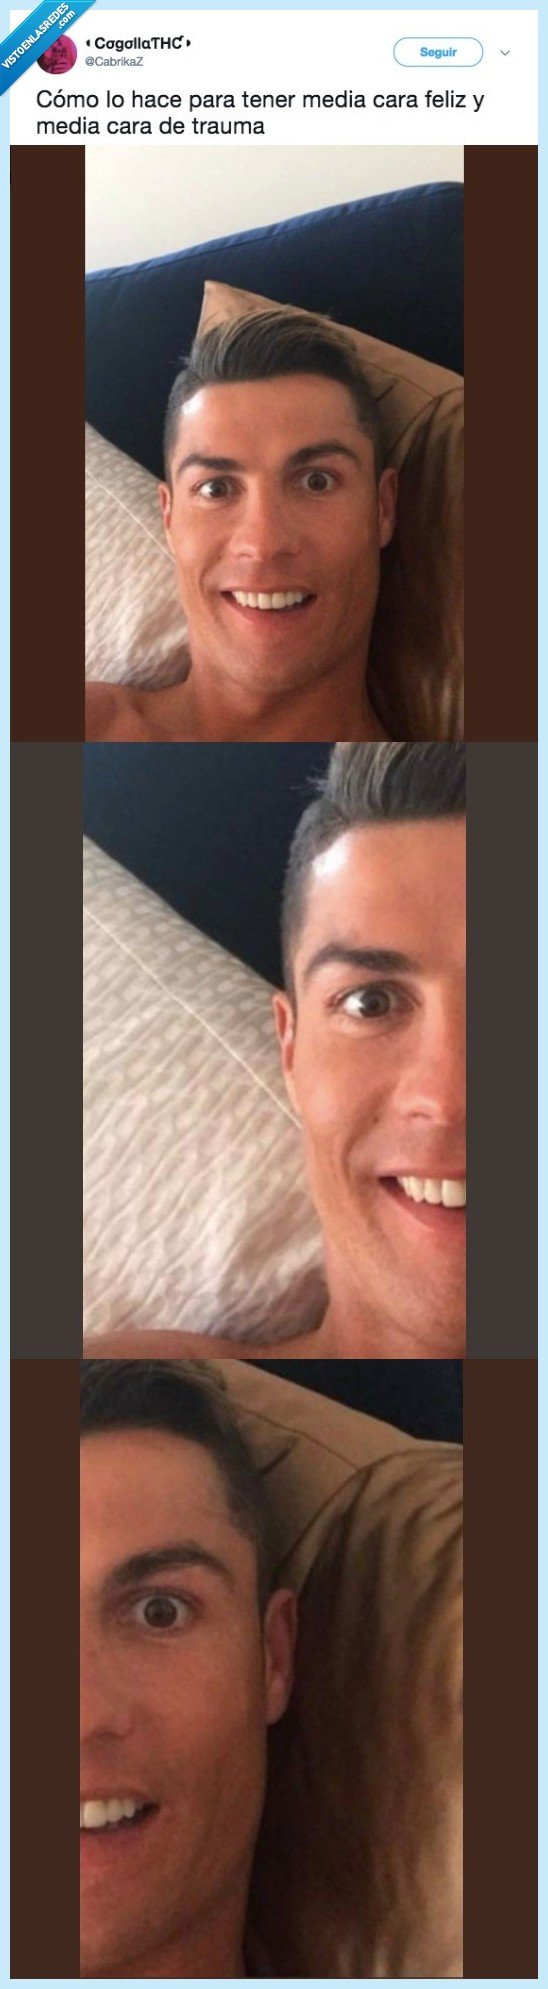 485180 - Descubren este detalle en una foto de Cristiano Ronaldo y todavía nos estamos partiendo, por @